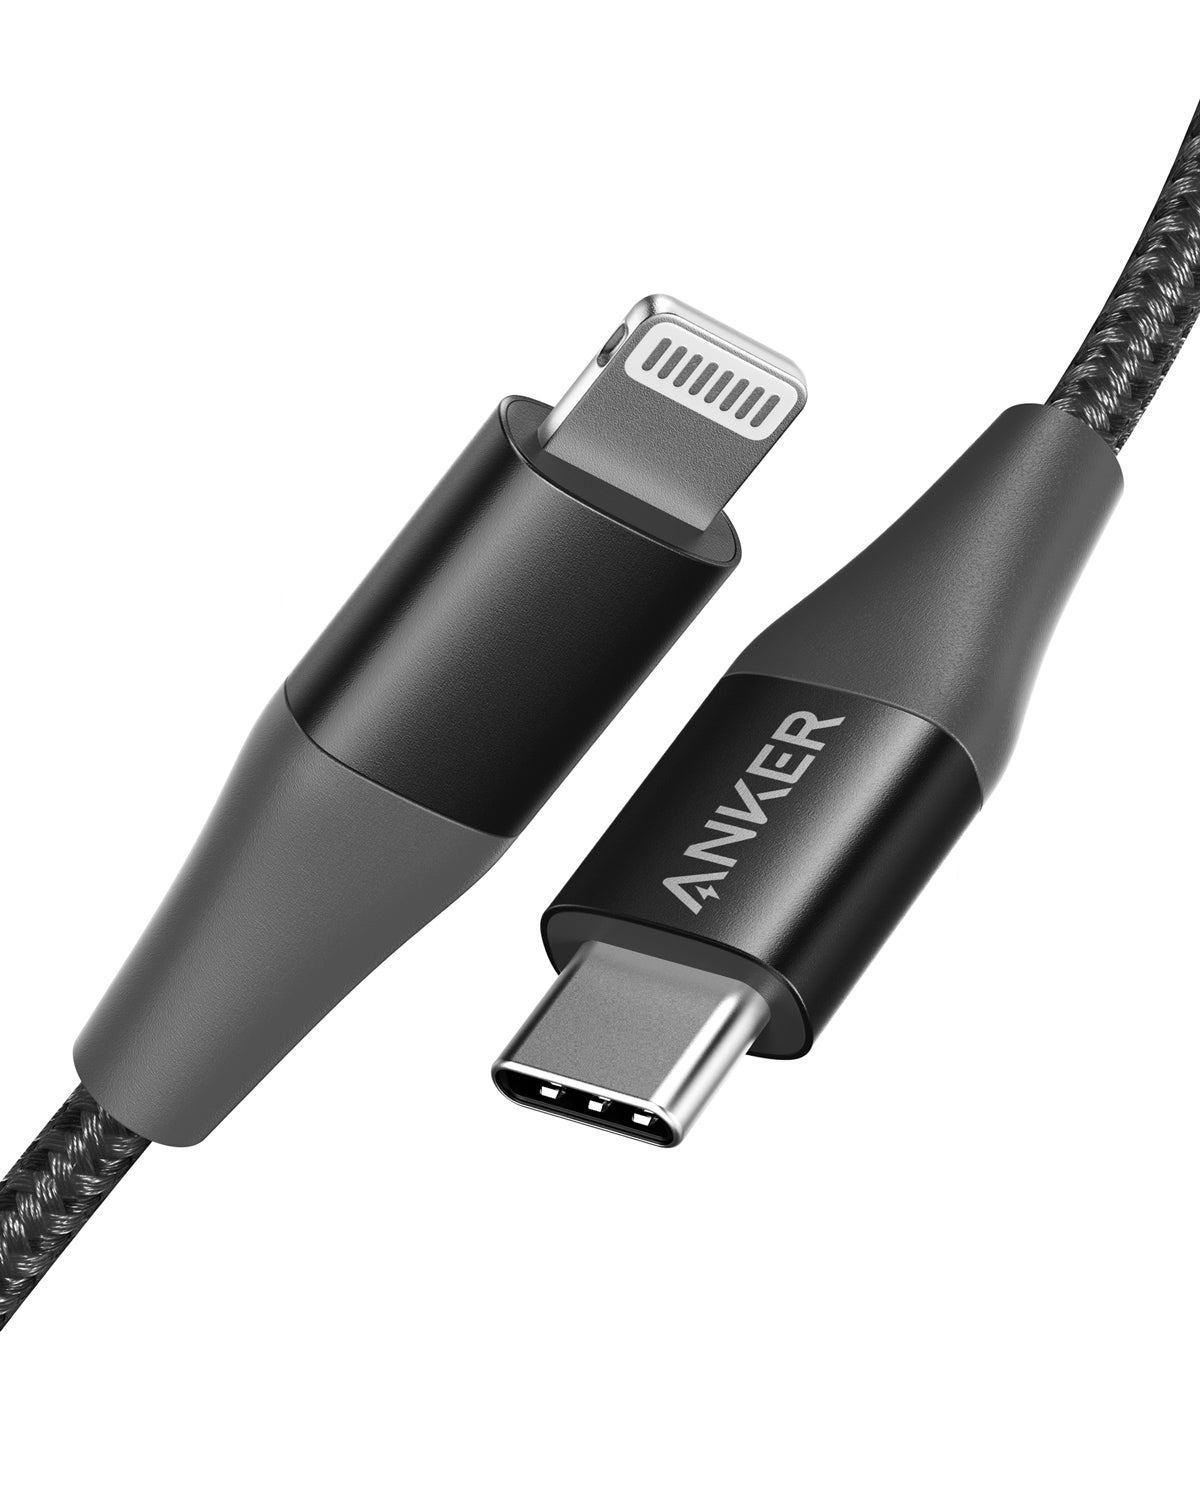 Skaldet Se igennem spids USB C to Lightning Cable [ Apple Mfi Certified] - Anker US